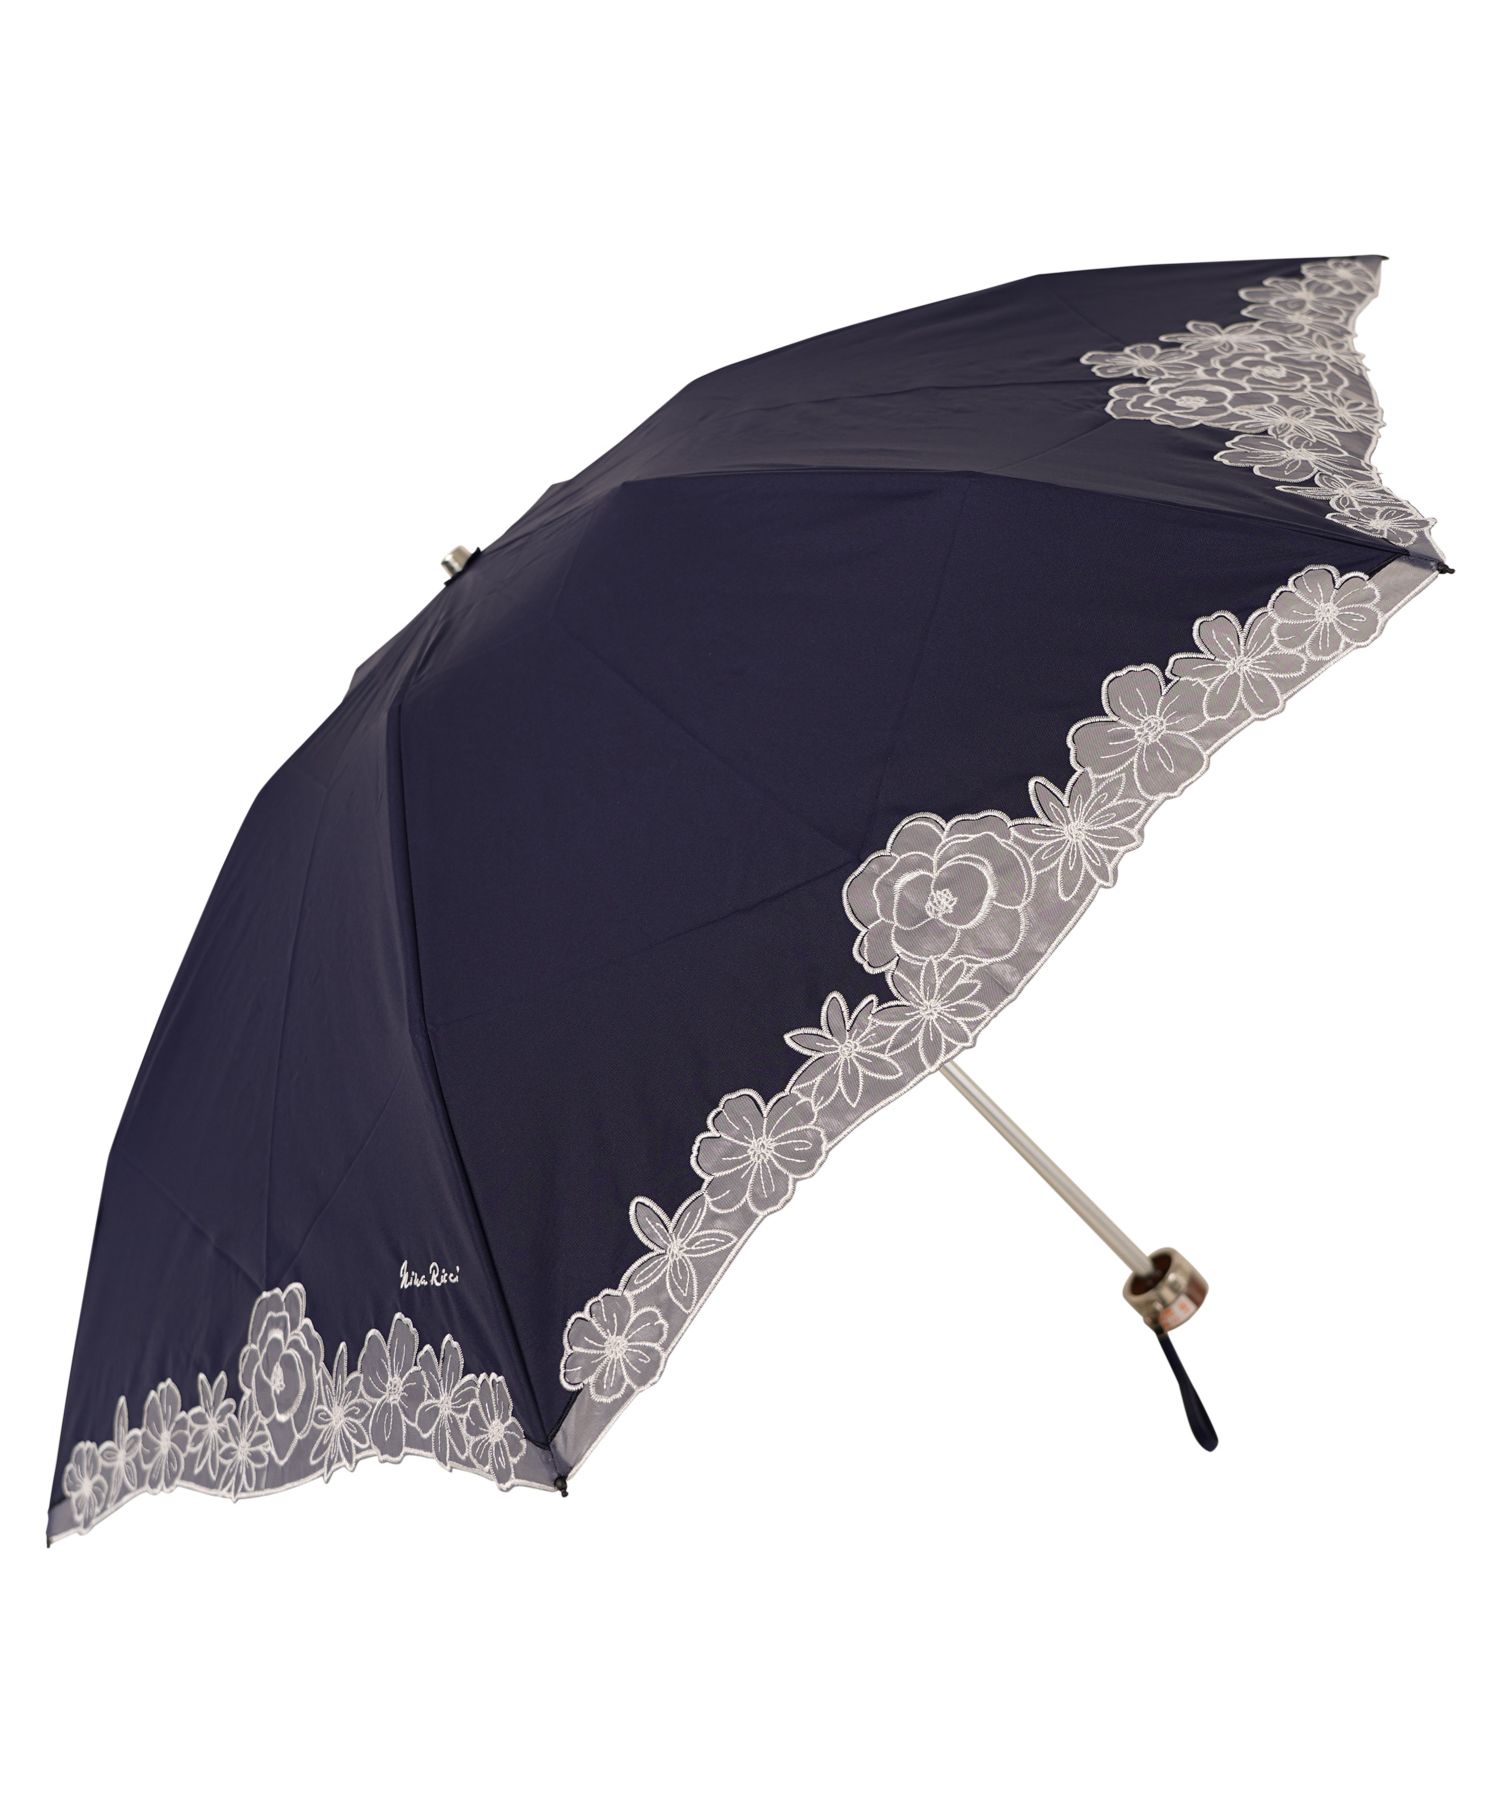 ニナリッチ 折りたたみ傘 晴雨兼用 レース 軽量 生まれのブランドで - 傘